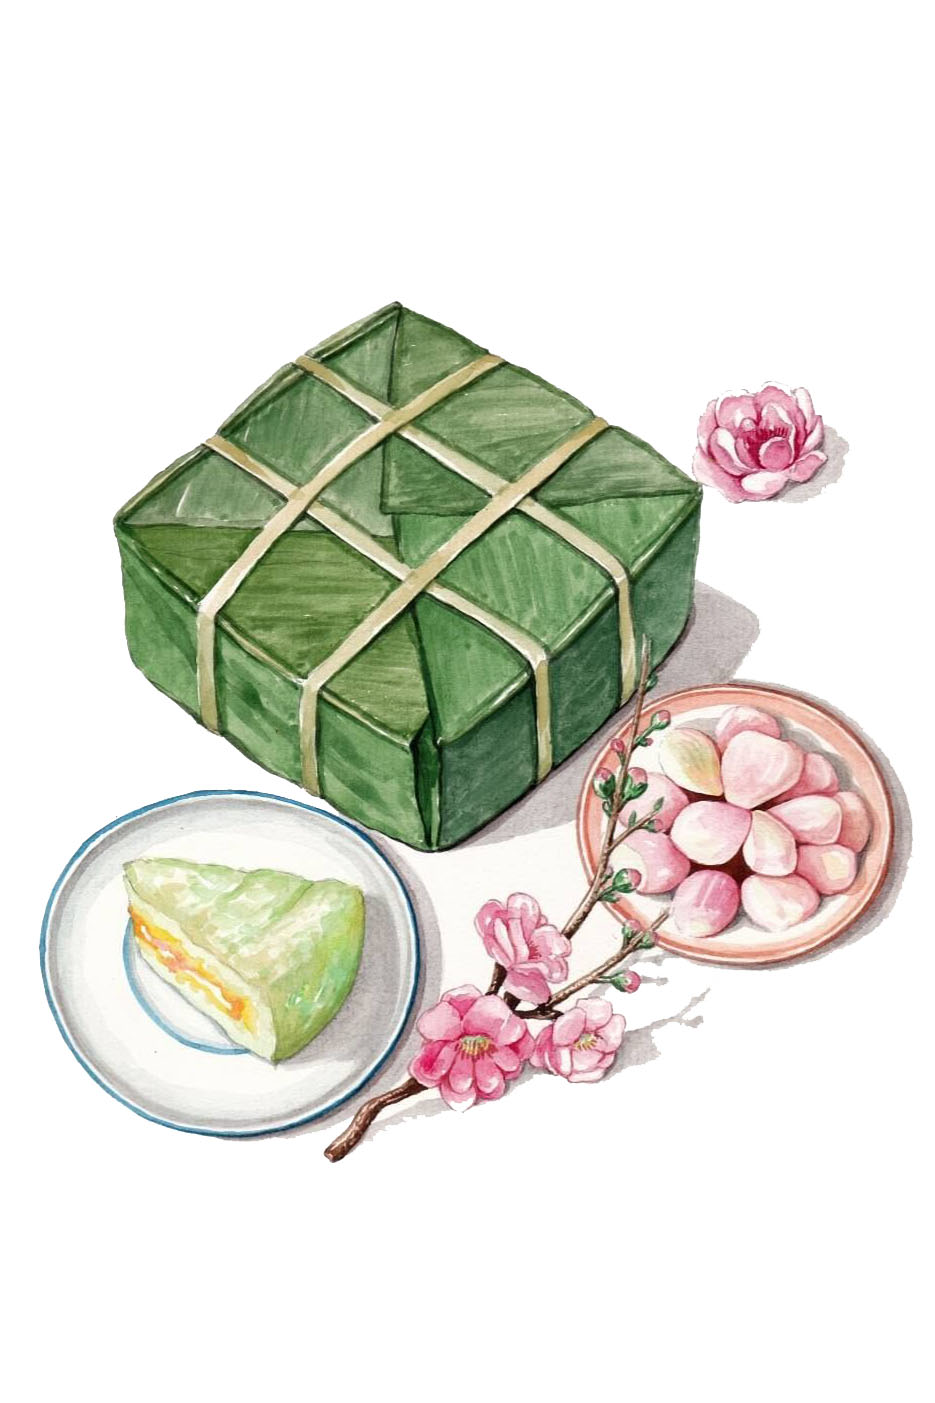 Hãy khám phá hình ảnh bánh chưng của chúng tôi để tìm hiểu về món ăn truyền thống đặc sắc của Việt Nam. Với màu xanh lá cây của lá dong, sự đậm đà của thịt và cơm nếp bên trong, bánh chưng sẽ gợi lên trong bạn cảm giác đặc biệt của một dịp Tết đang đến gần.